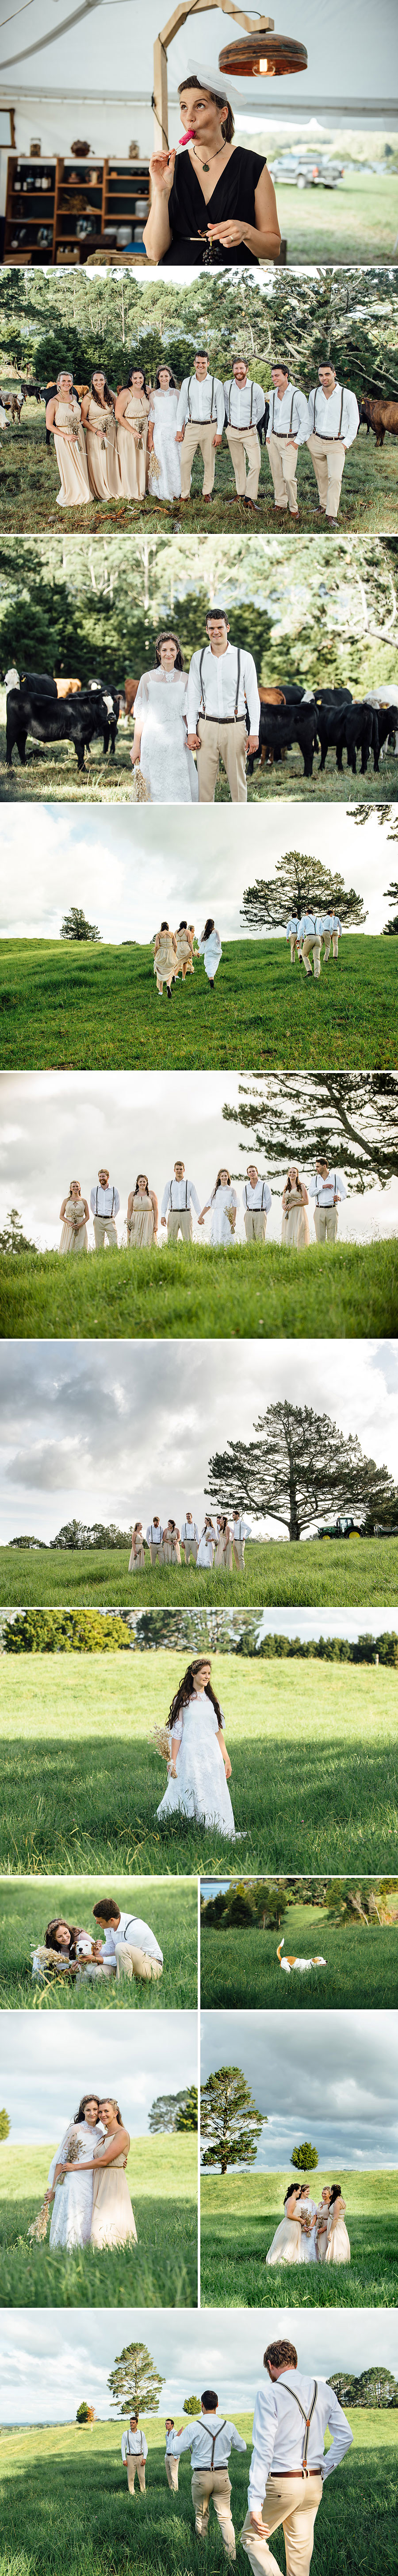 Kerikeri Wedding, Photographer Jess Burges, Northland New Zealand